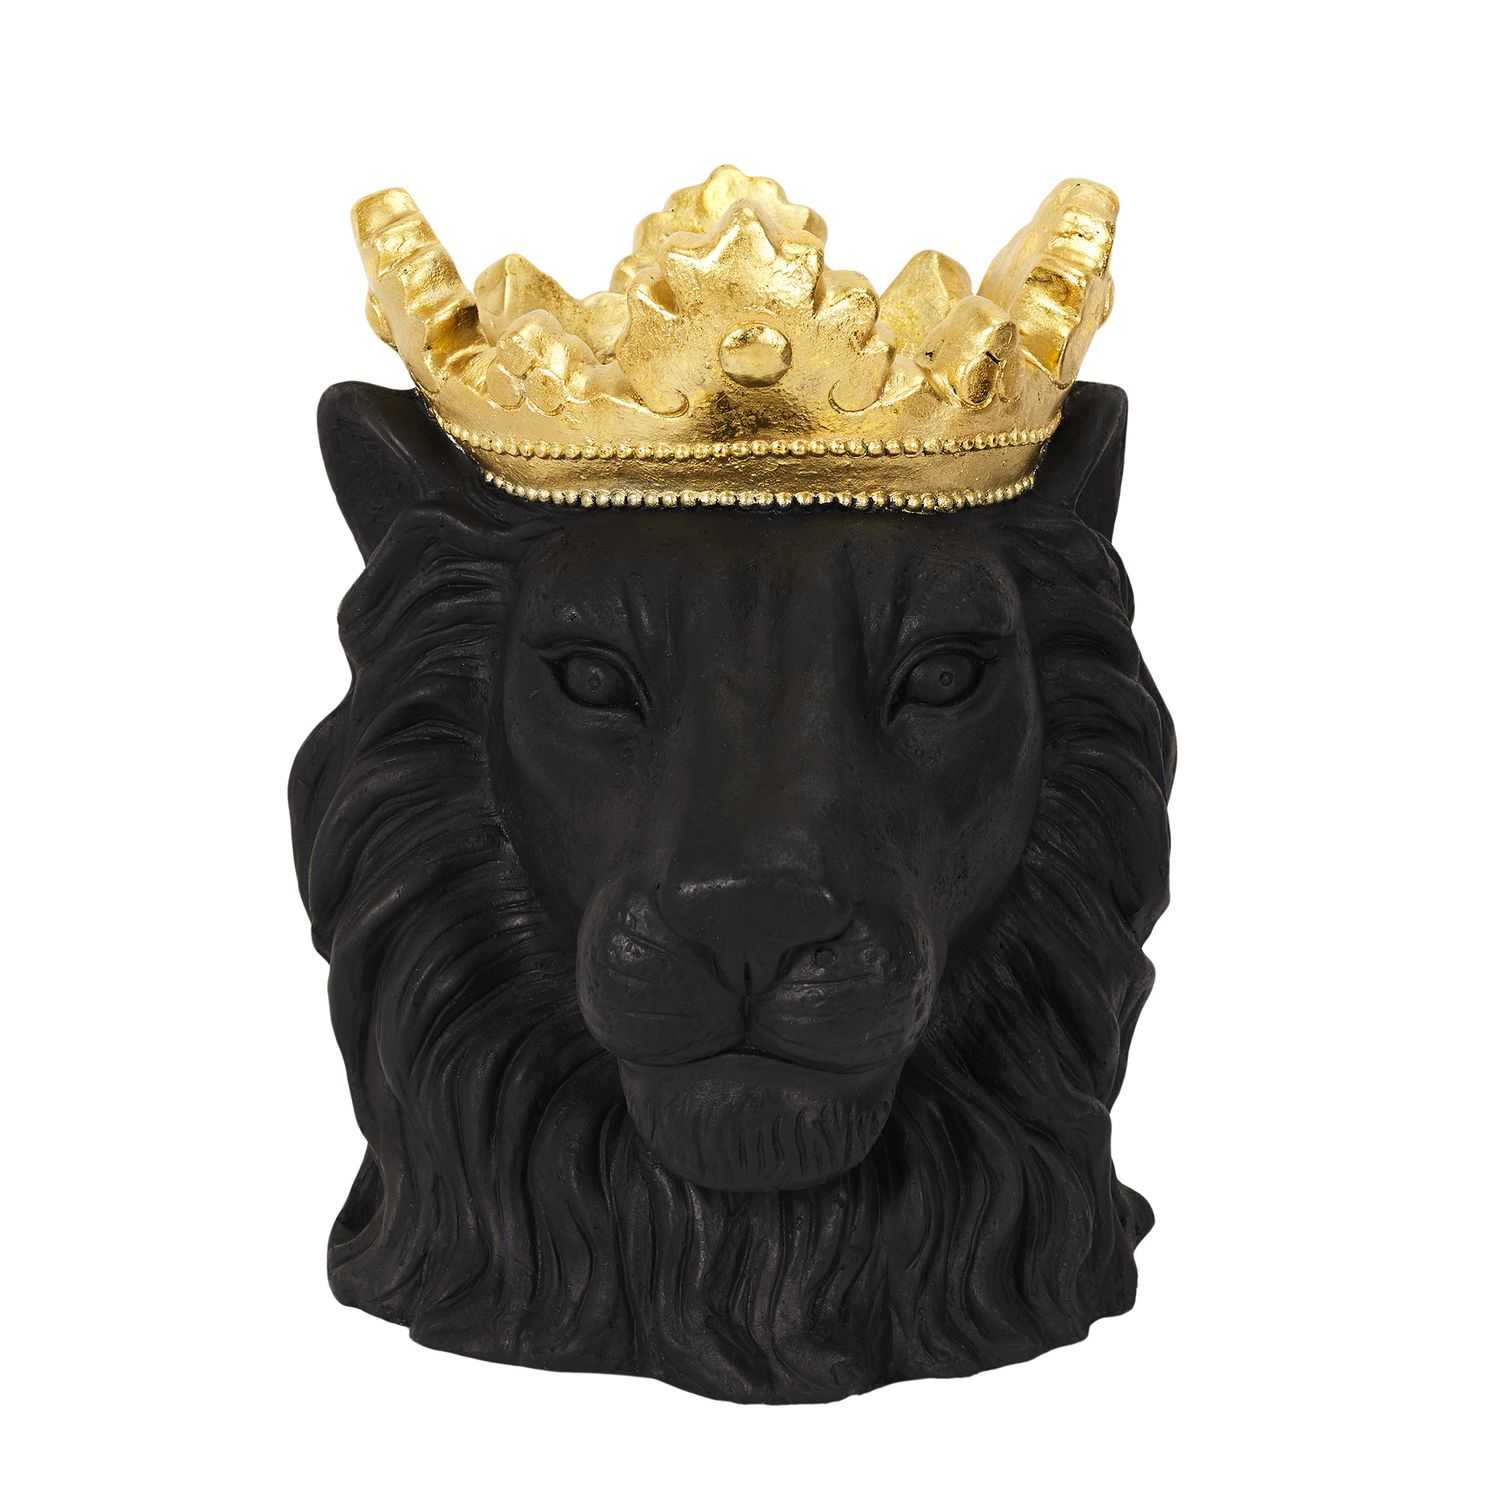 Decoratieve pot leeuw H39xD16cm, Zwart